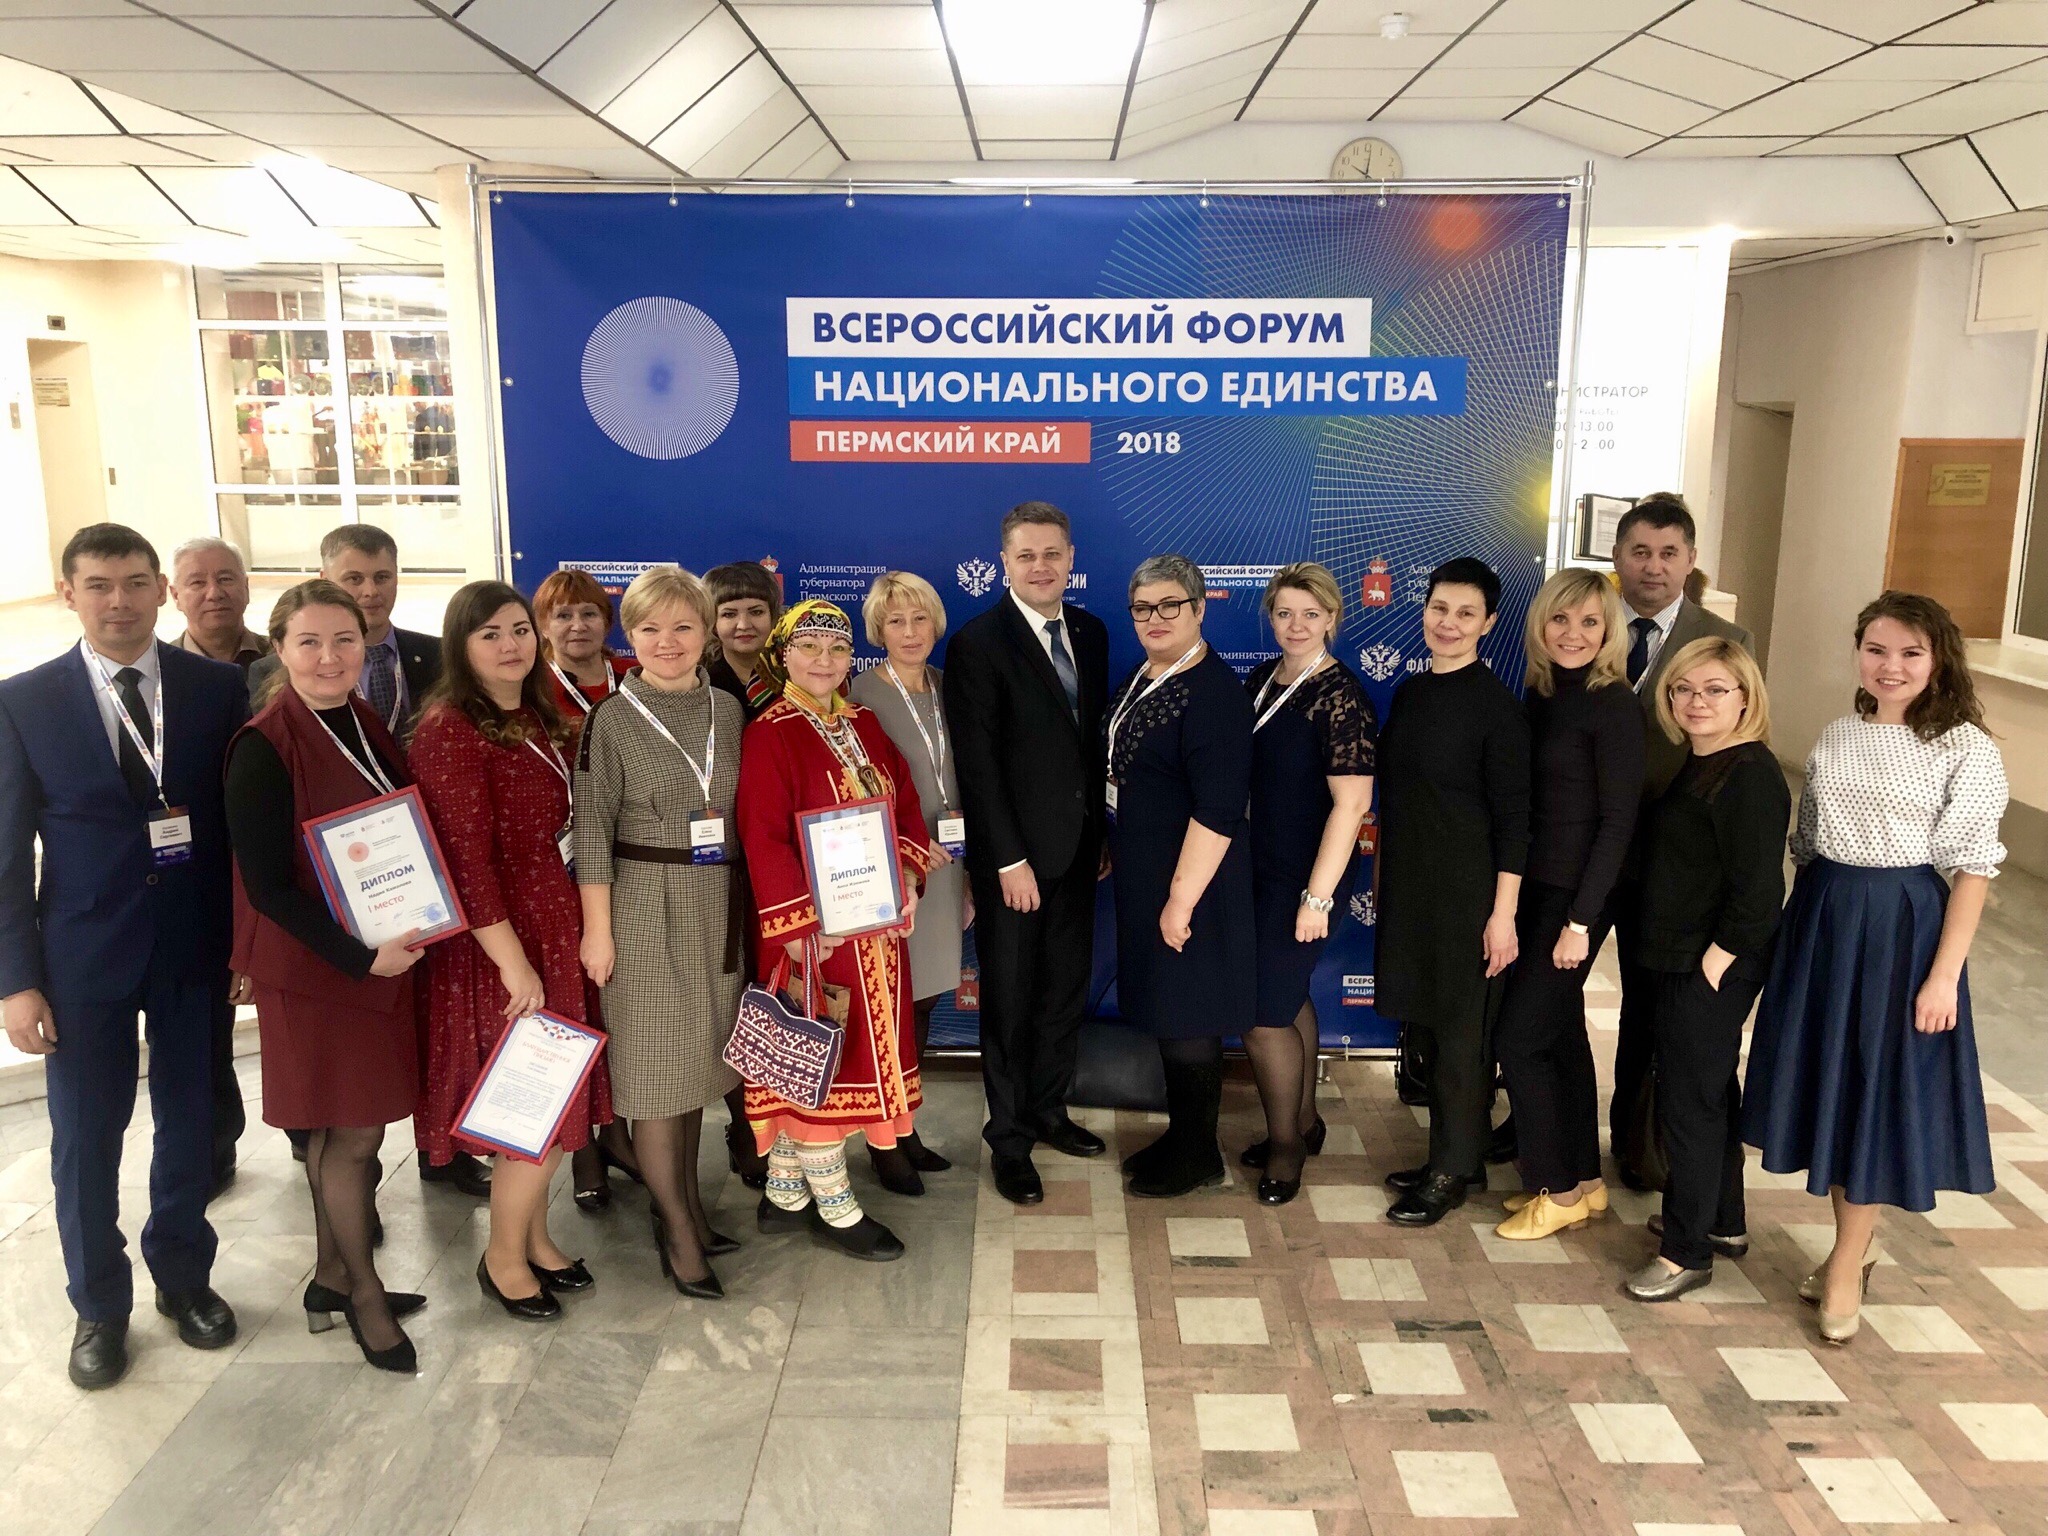 Югорчане приняли участие во всероссийском форуме национального единства